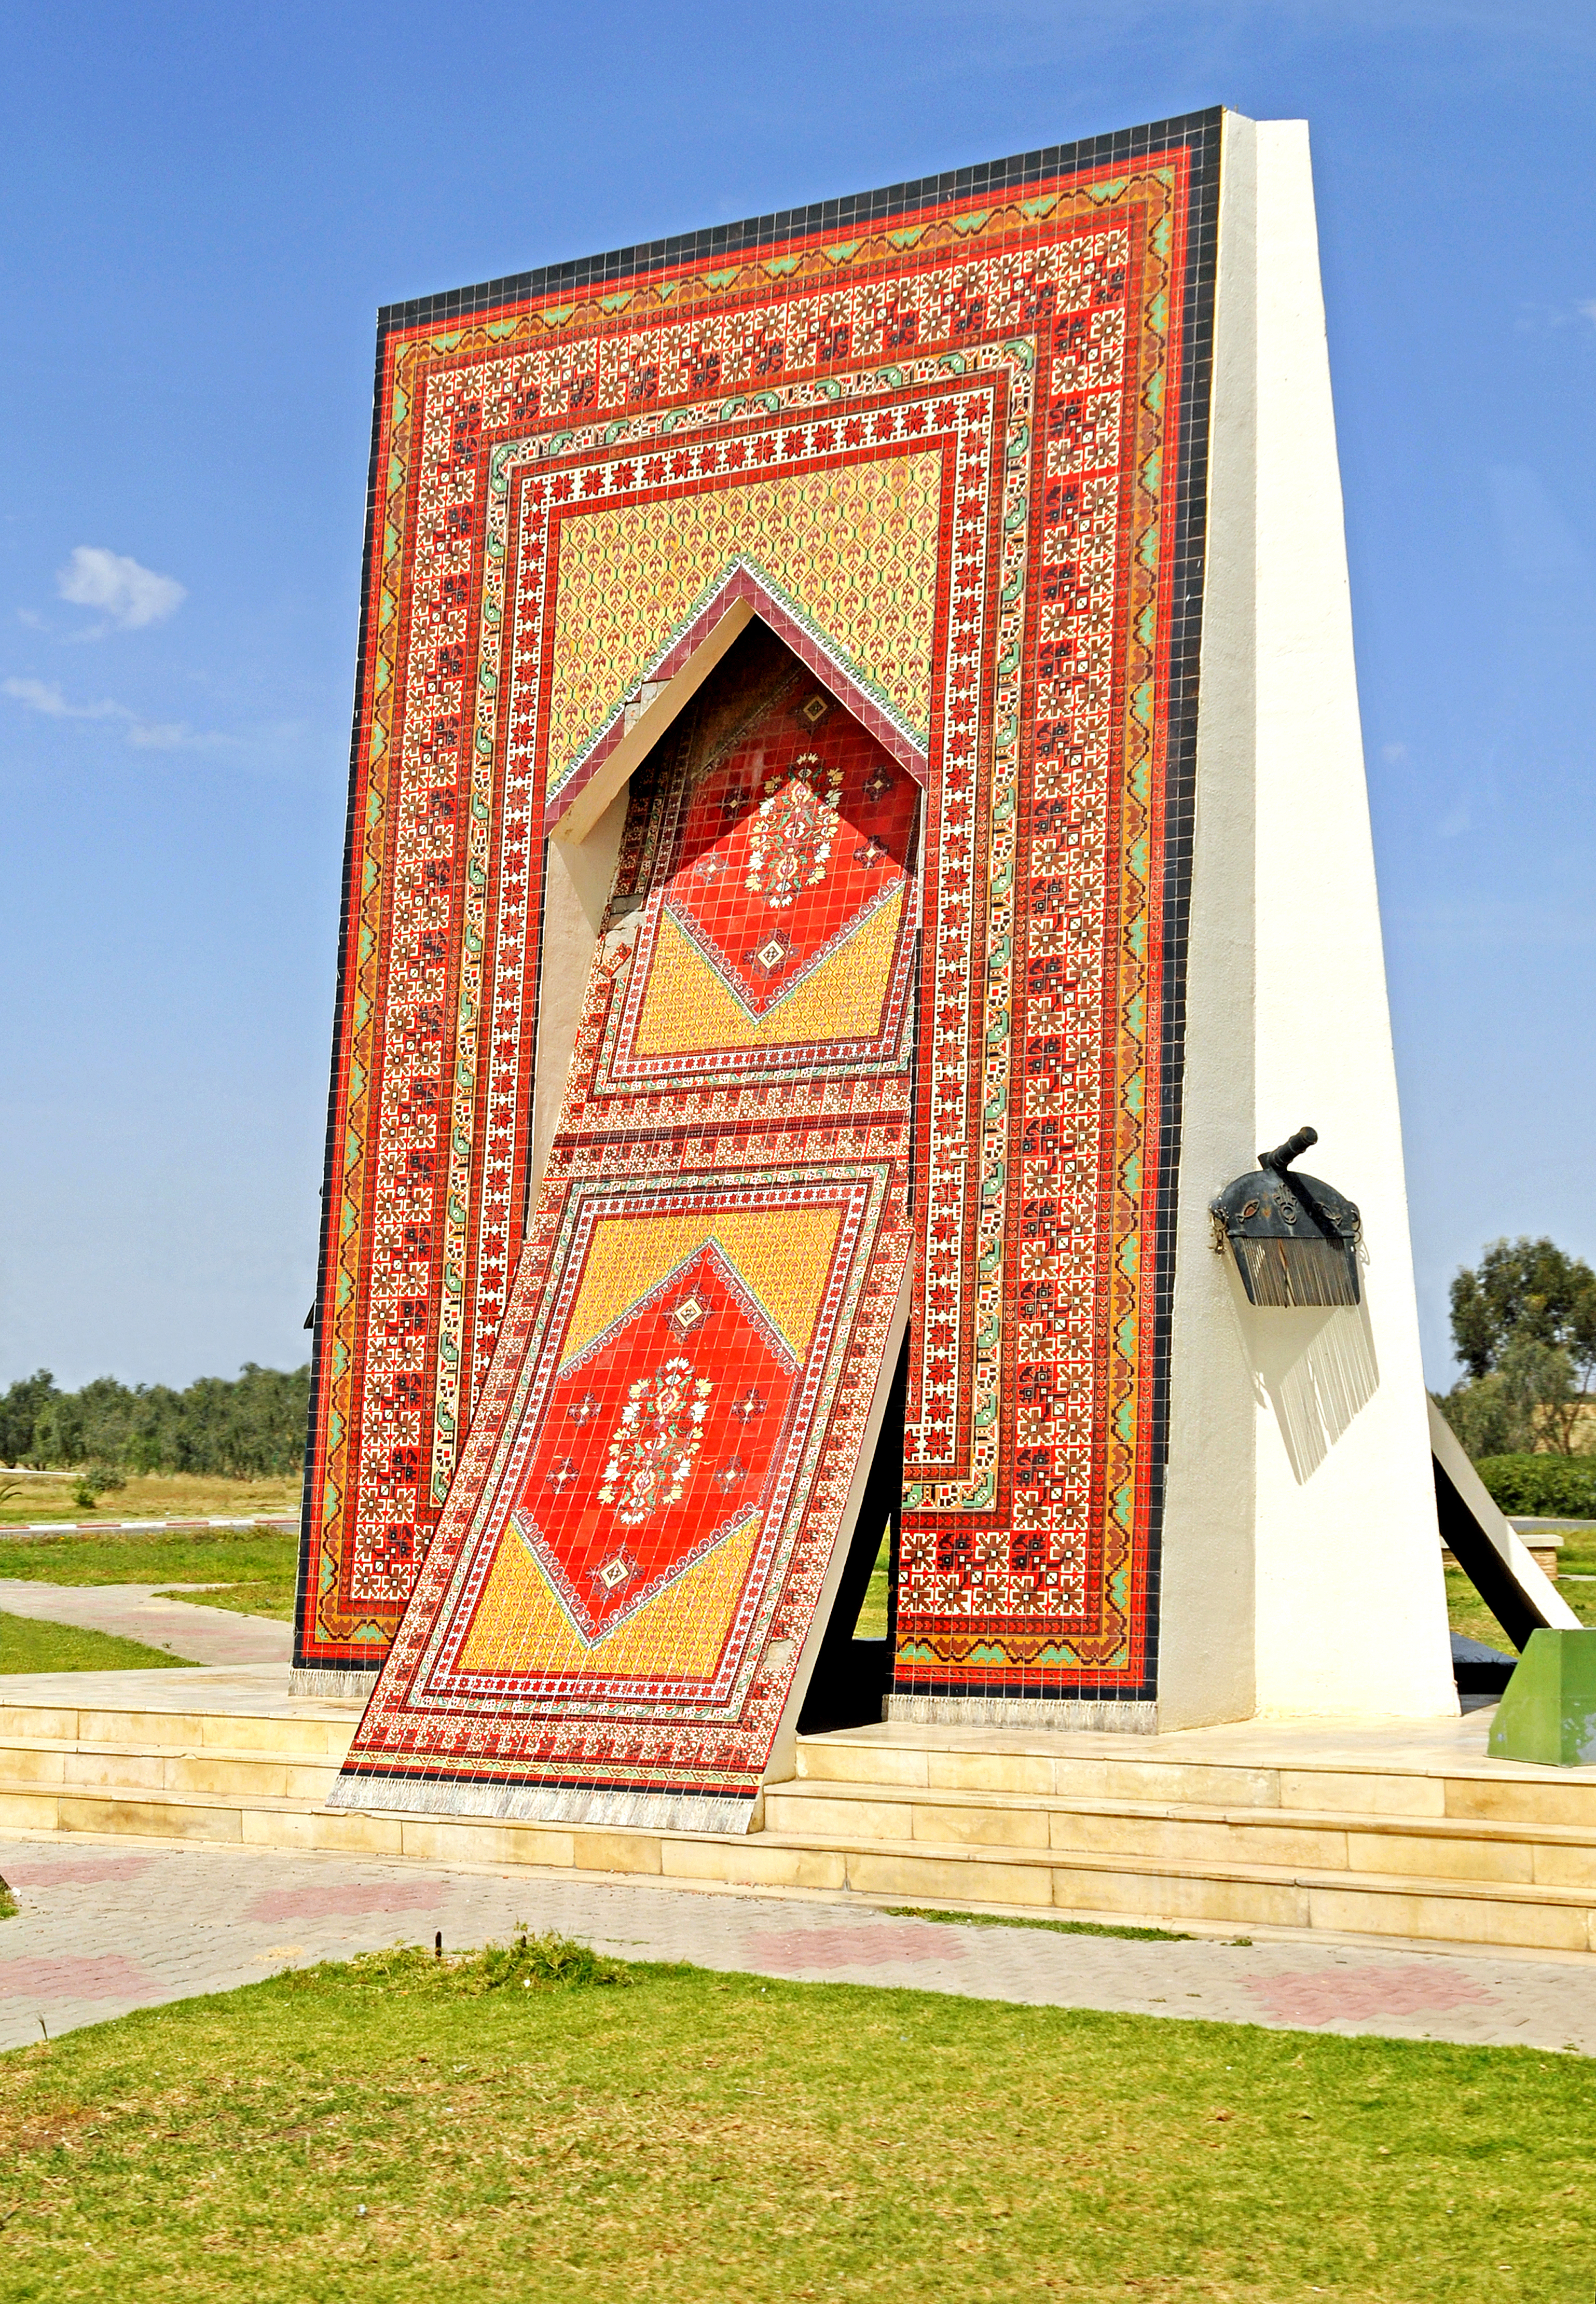 Tunisia-4593 - Carpet Monument